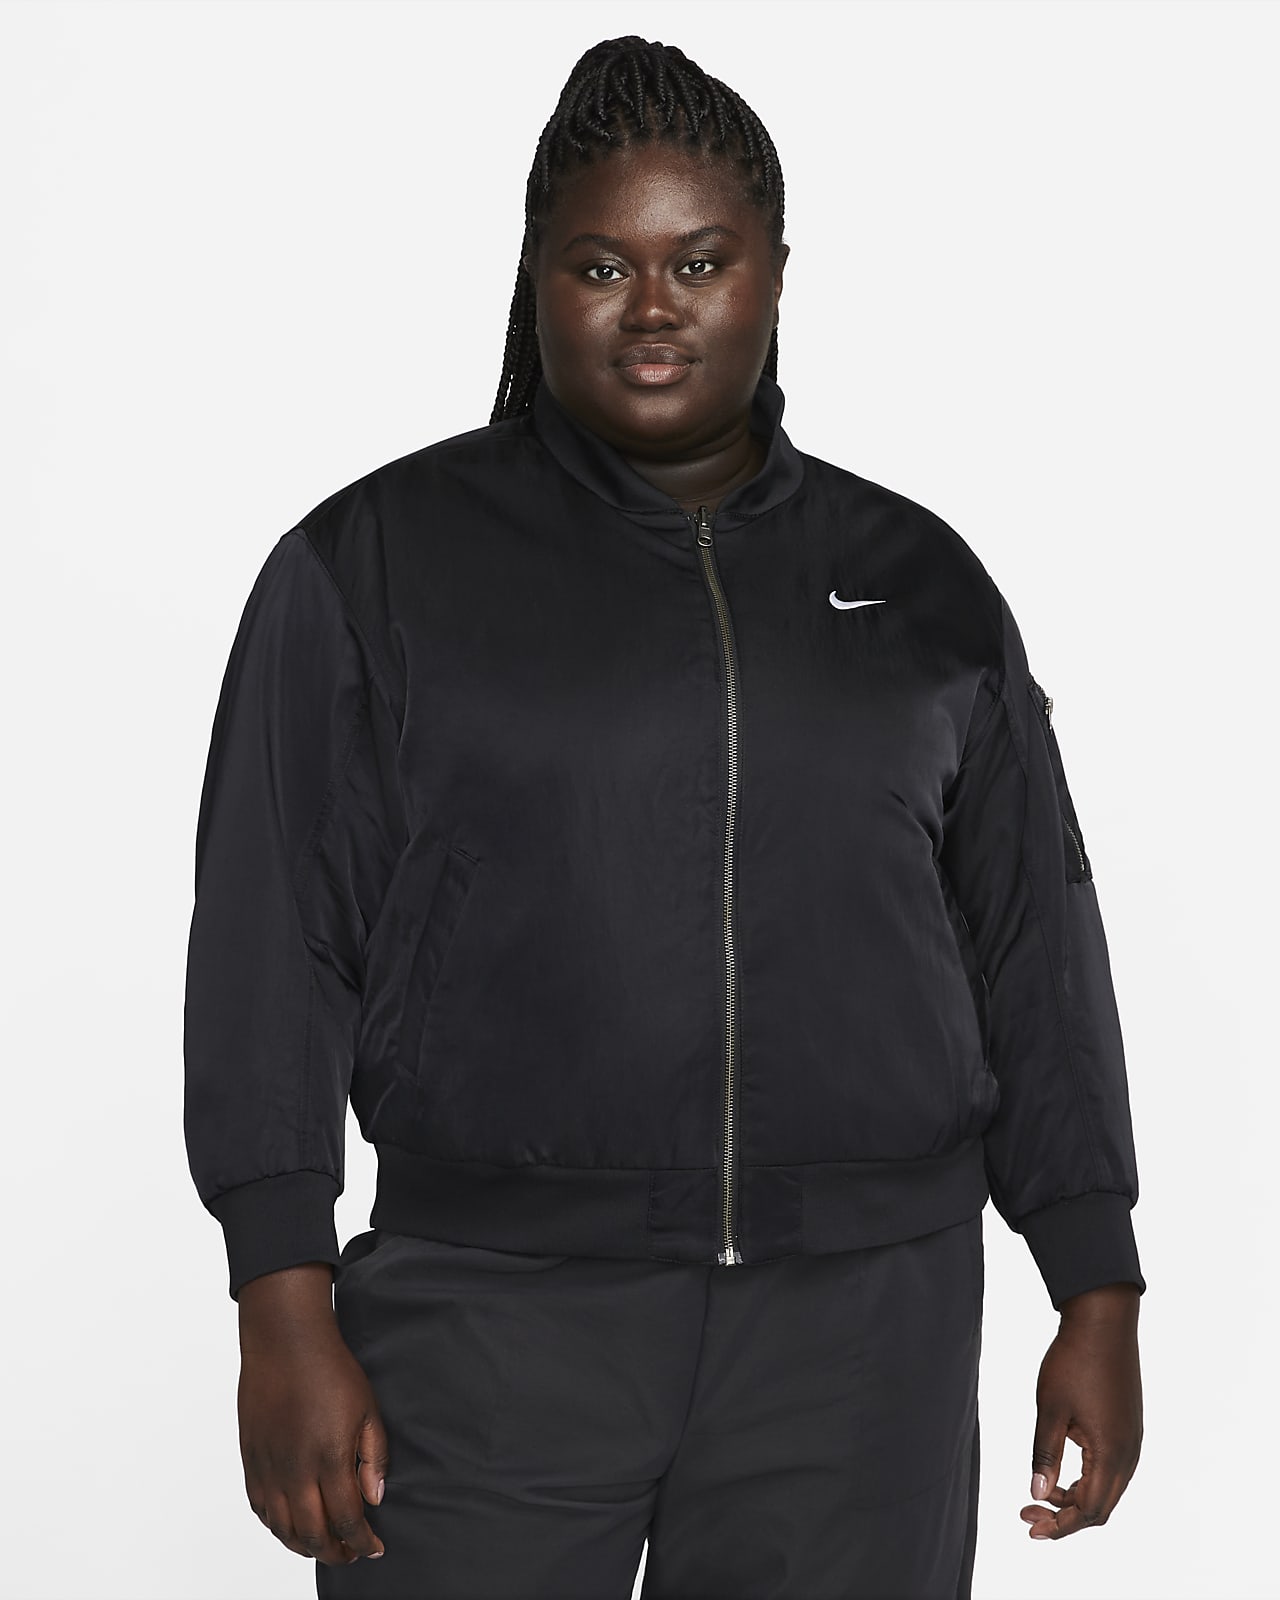 Nike Women's Sportswear Varsity Bomber Jacket, Black, Size: Large